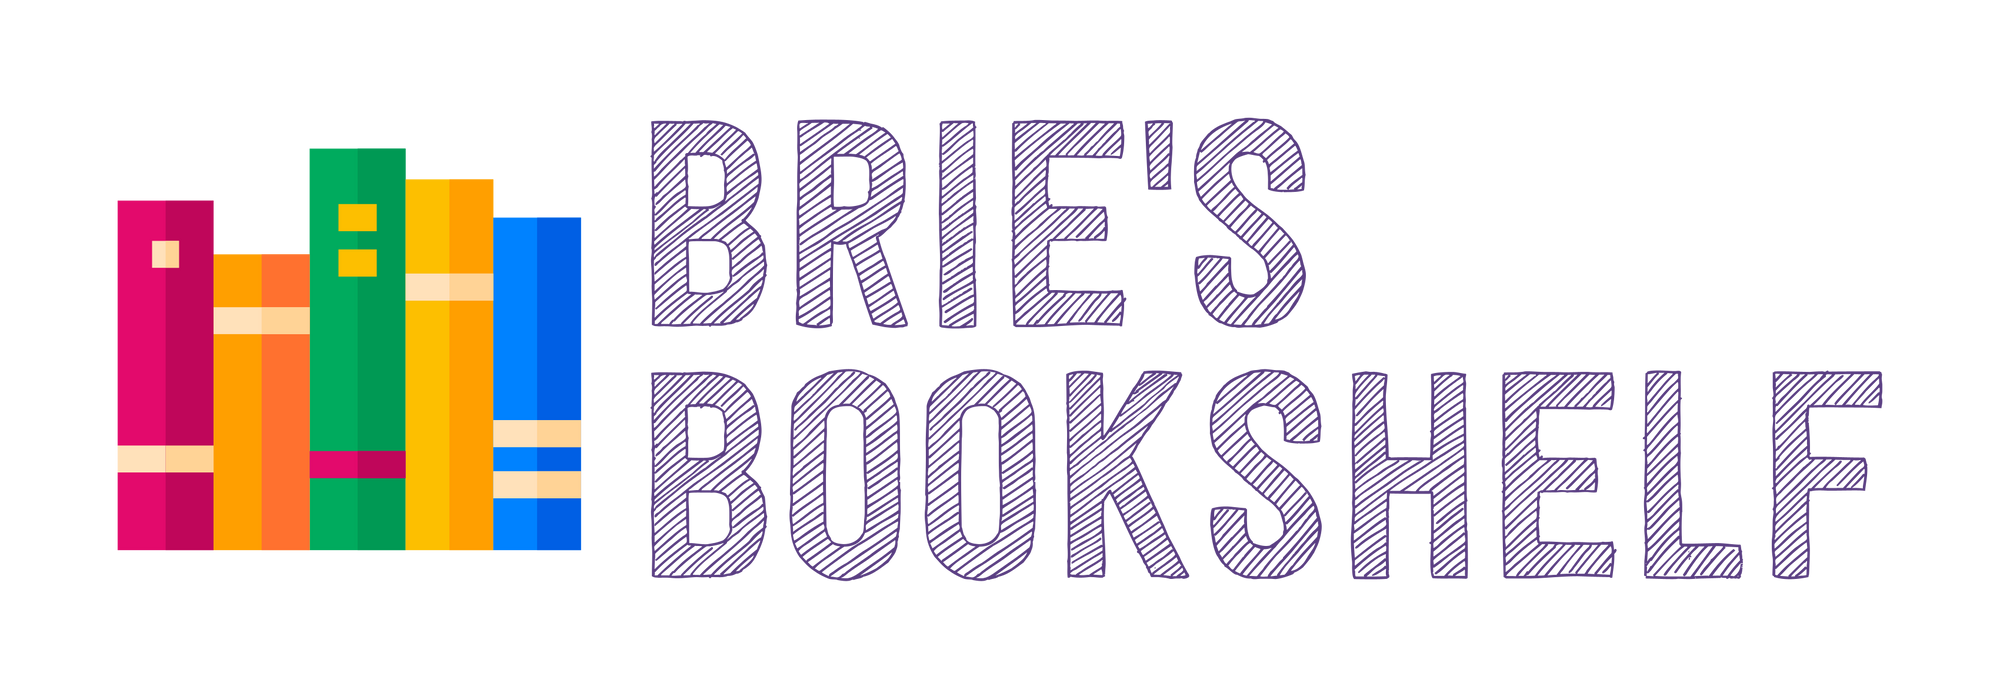 Brie's Bookshelf: The Newsletter